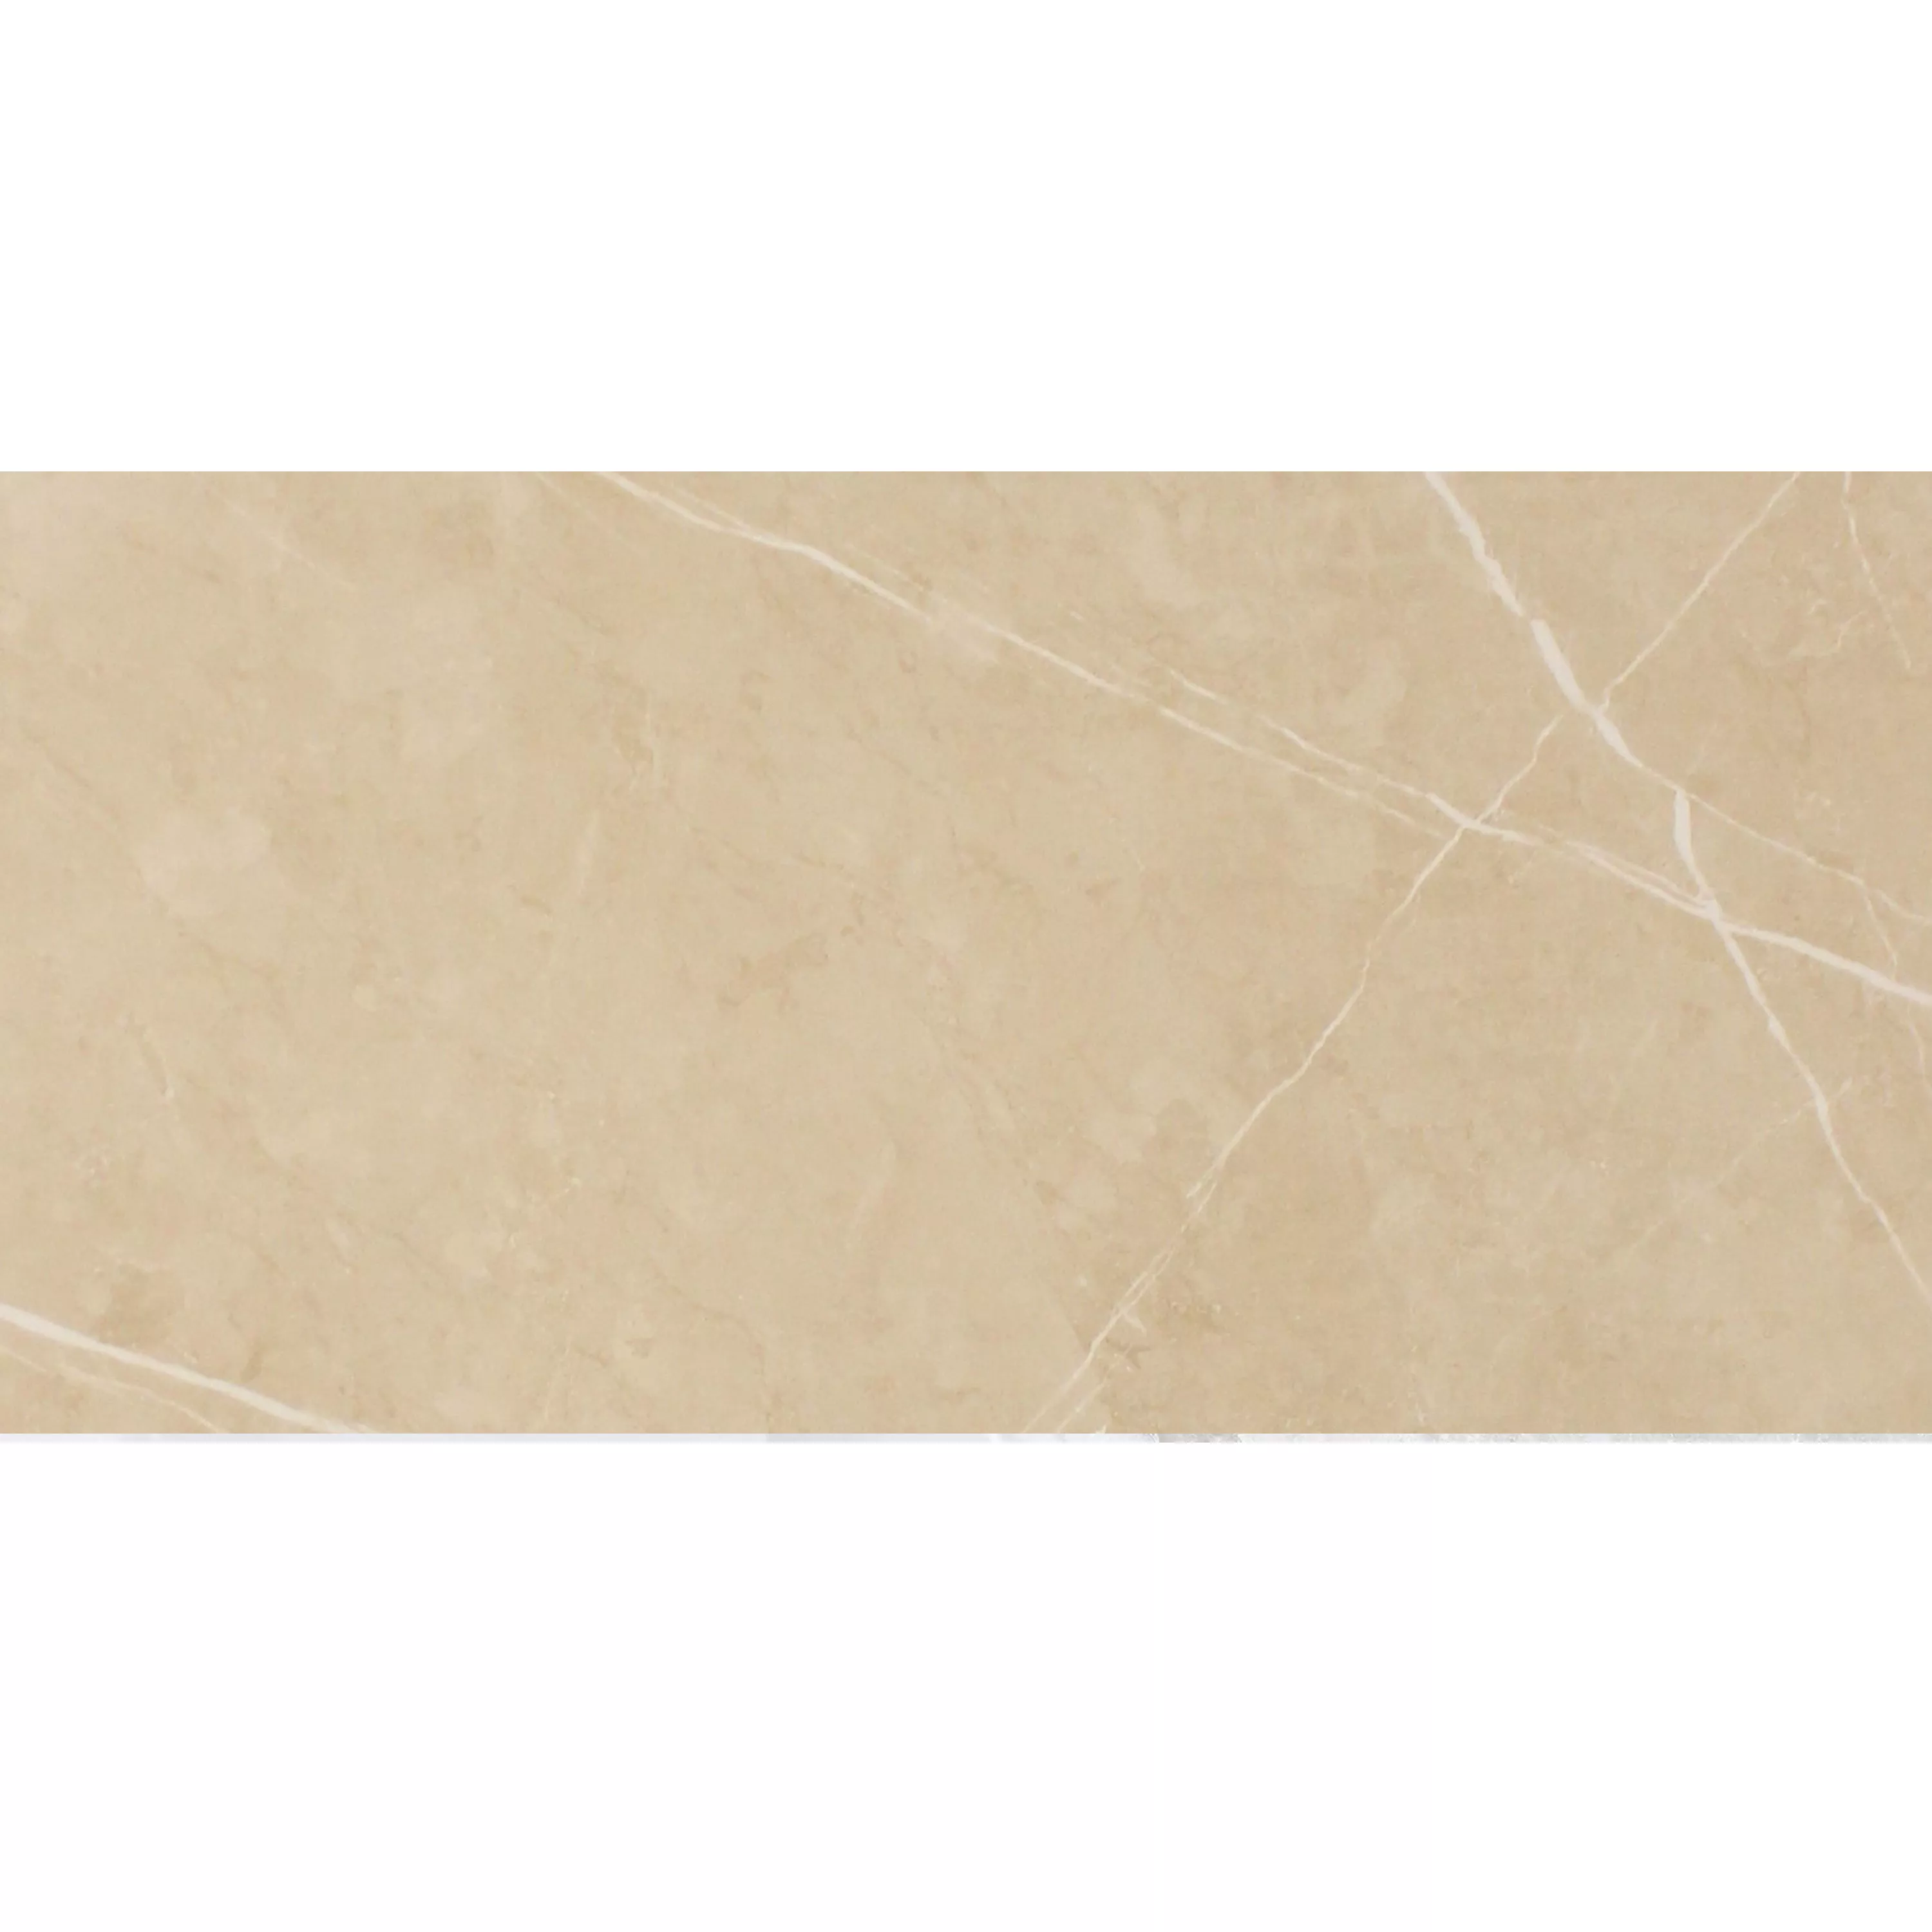 Πλακάκια Δαπέδου Astara Eμφάνιση Φυσικής Πέτρας Αμεμπτος Μπεζ 30x60cm